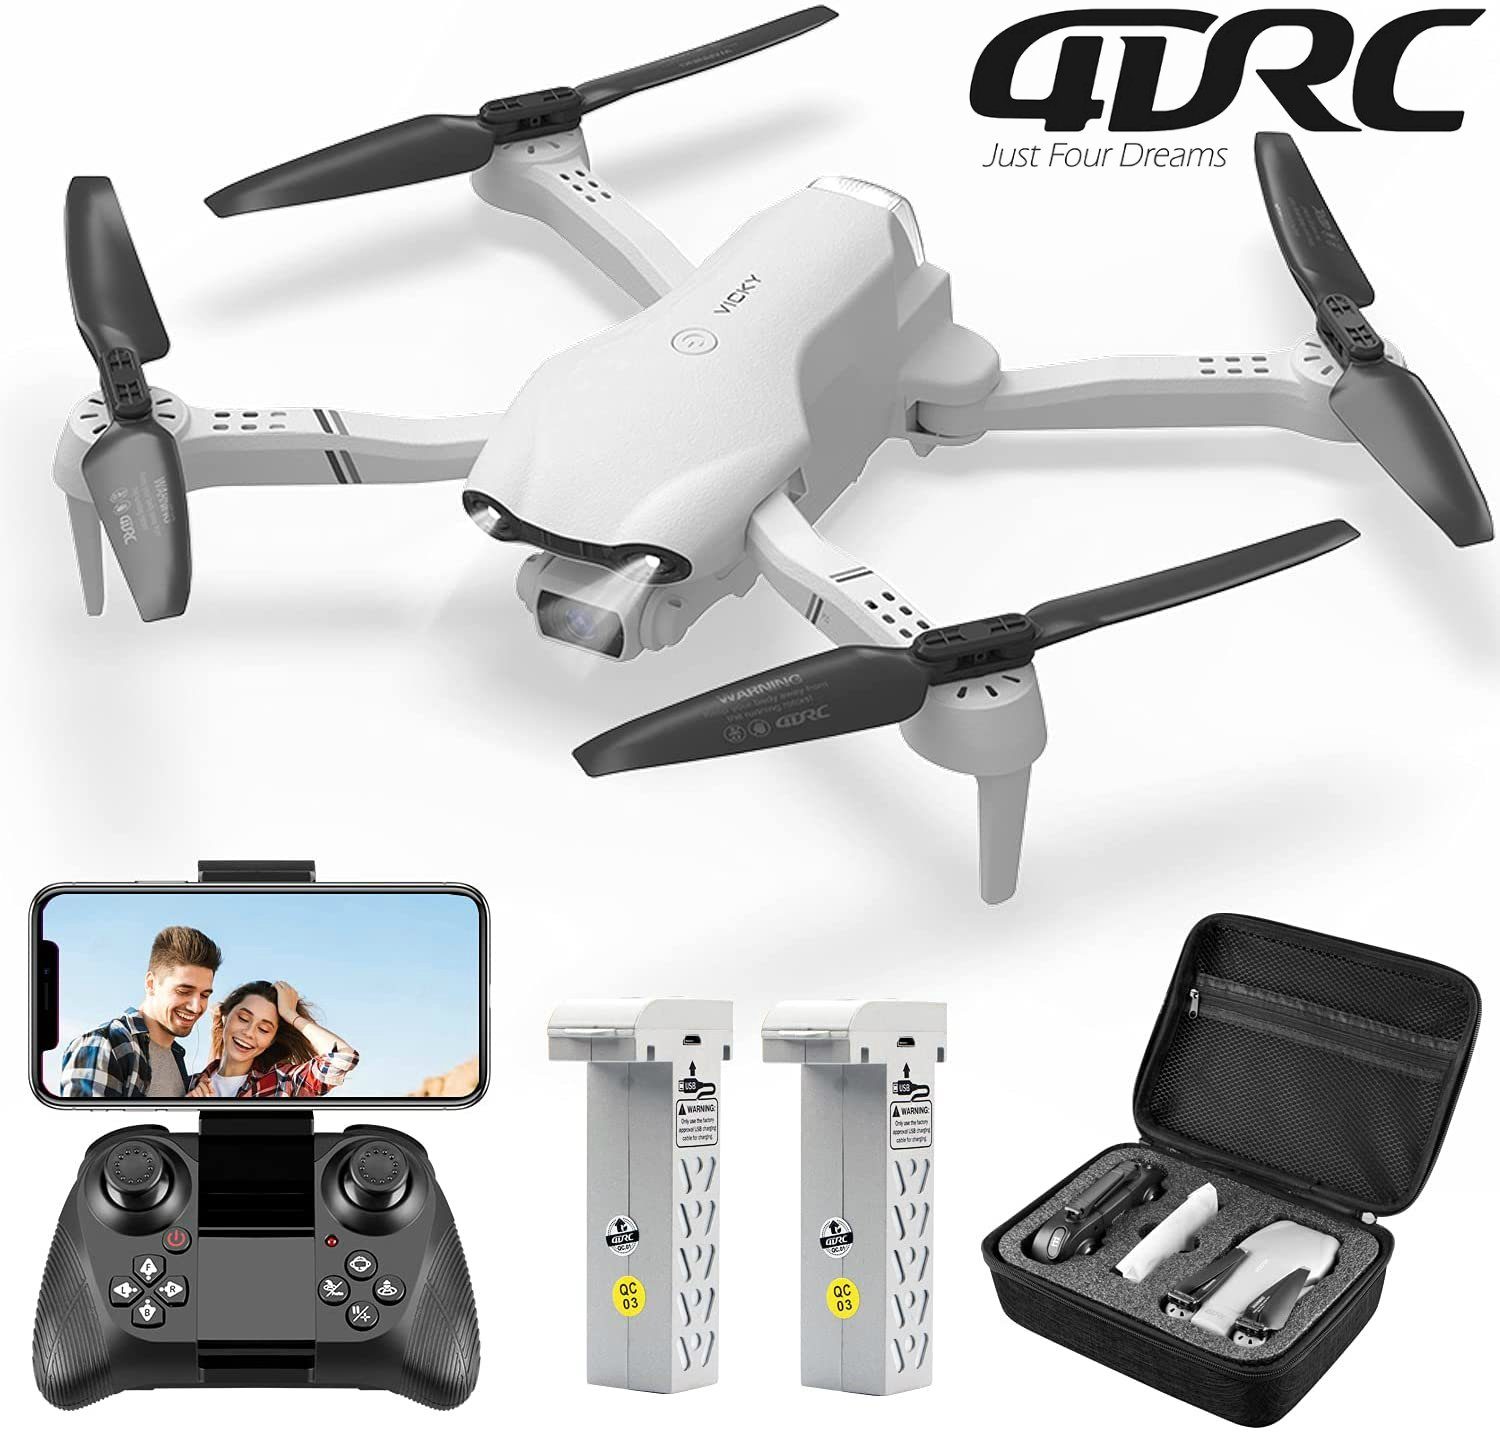 4DRC für Kinder & Anfänger, HD, Schwebeflug) Minuten Quadcopter F10, (1080P automatischer FPV-Live-Video, 32 Spielzeug-Drohne Flugzeit, klappbarer Weiß